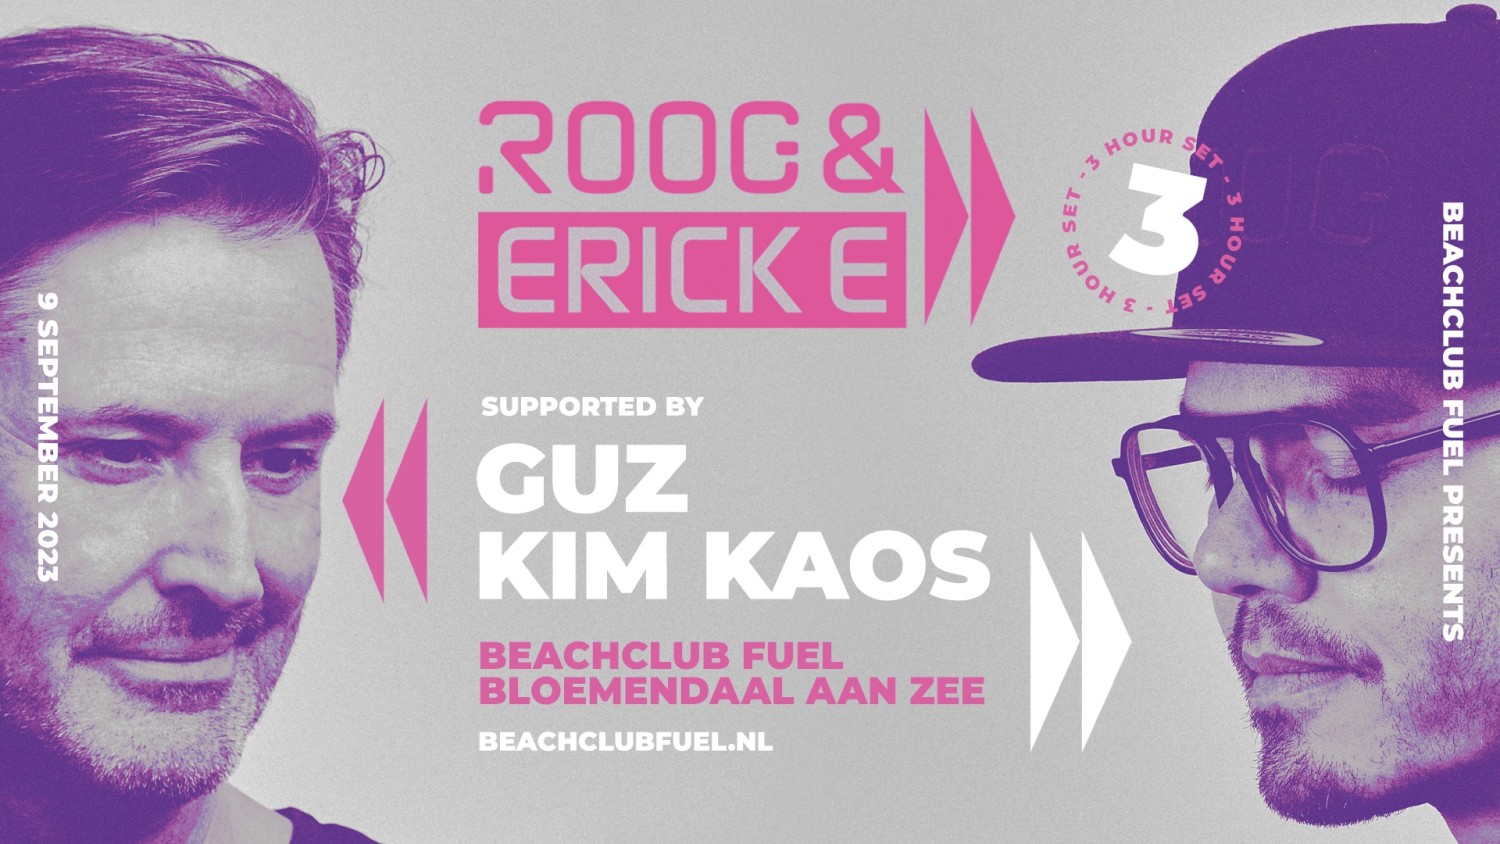 Beachclub FUEL presents ROOG & Erick E